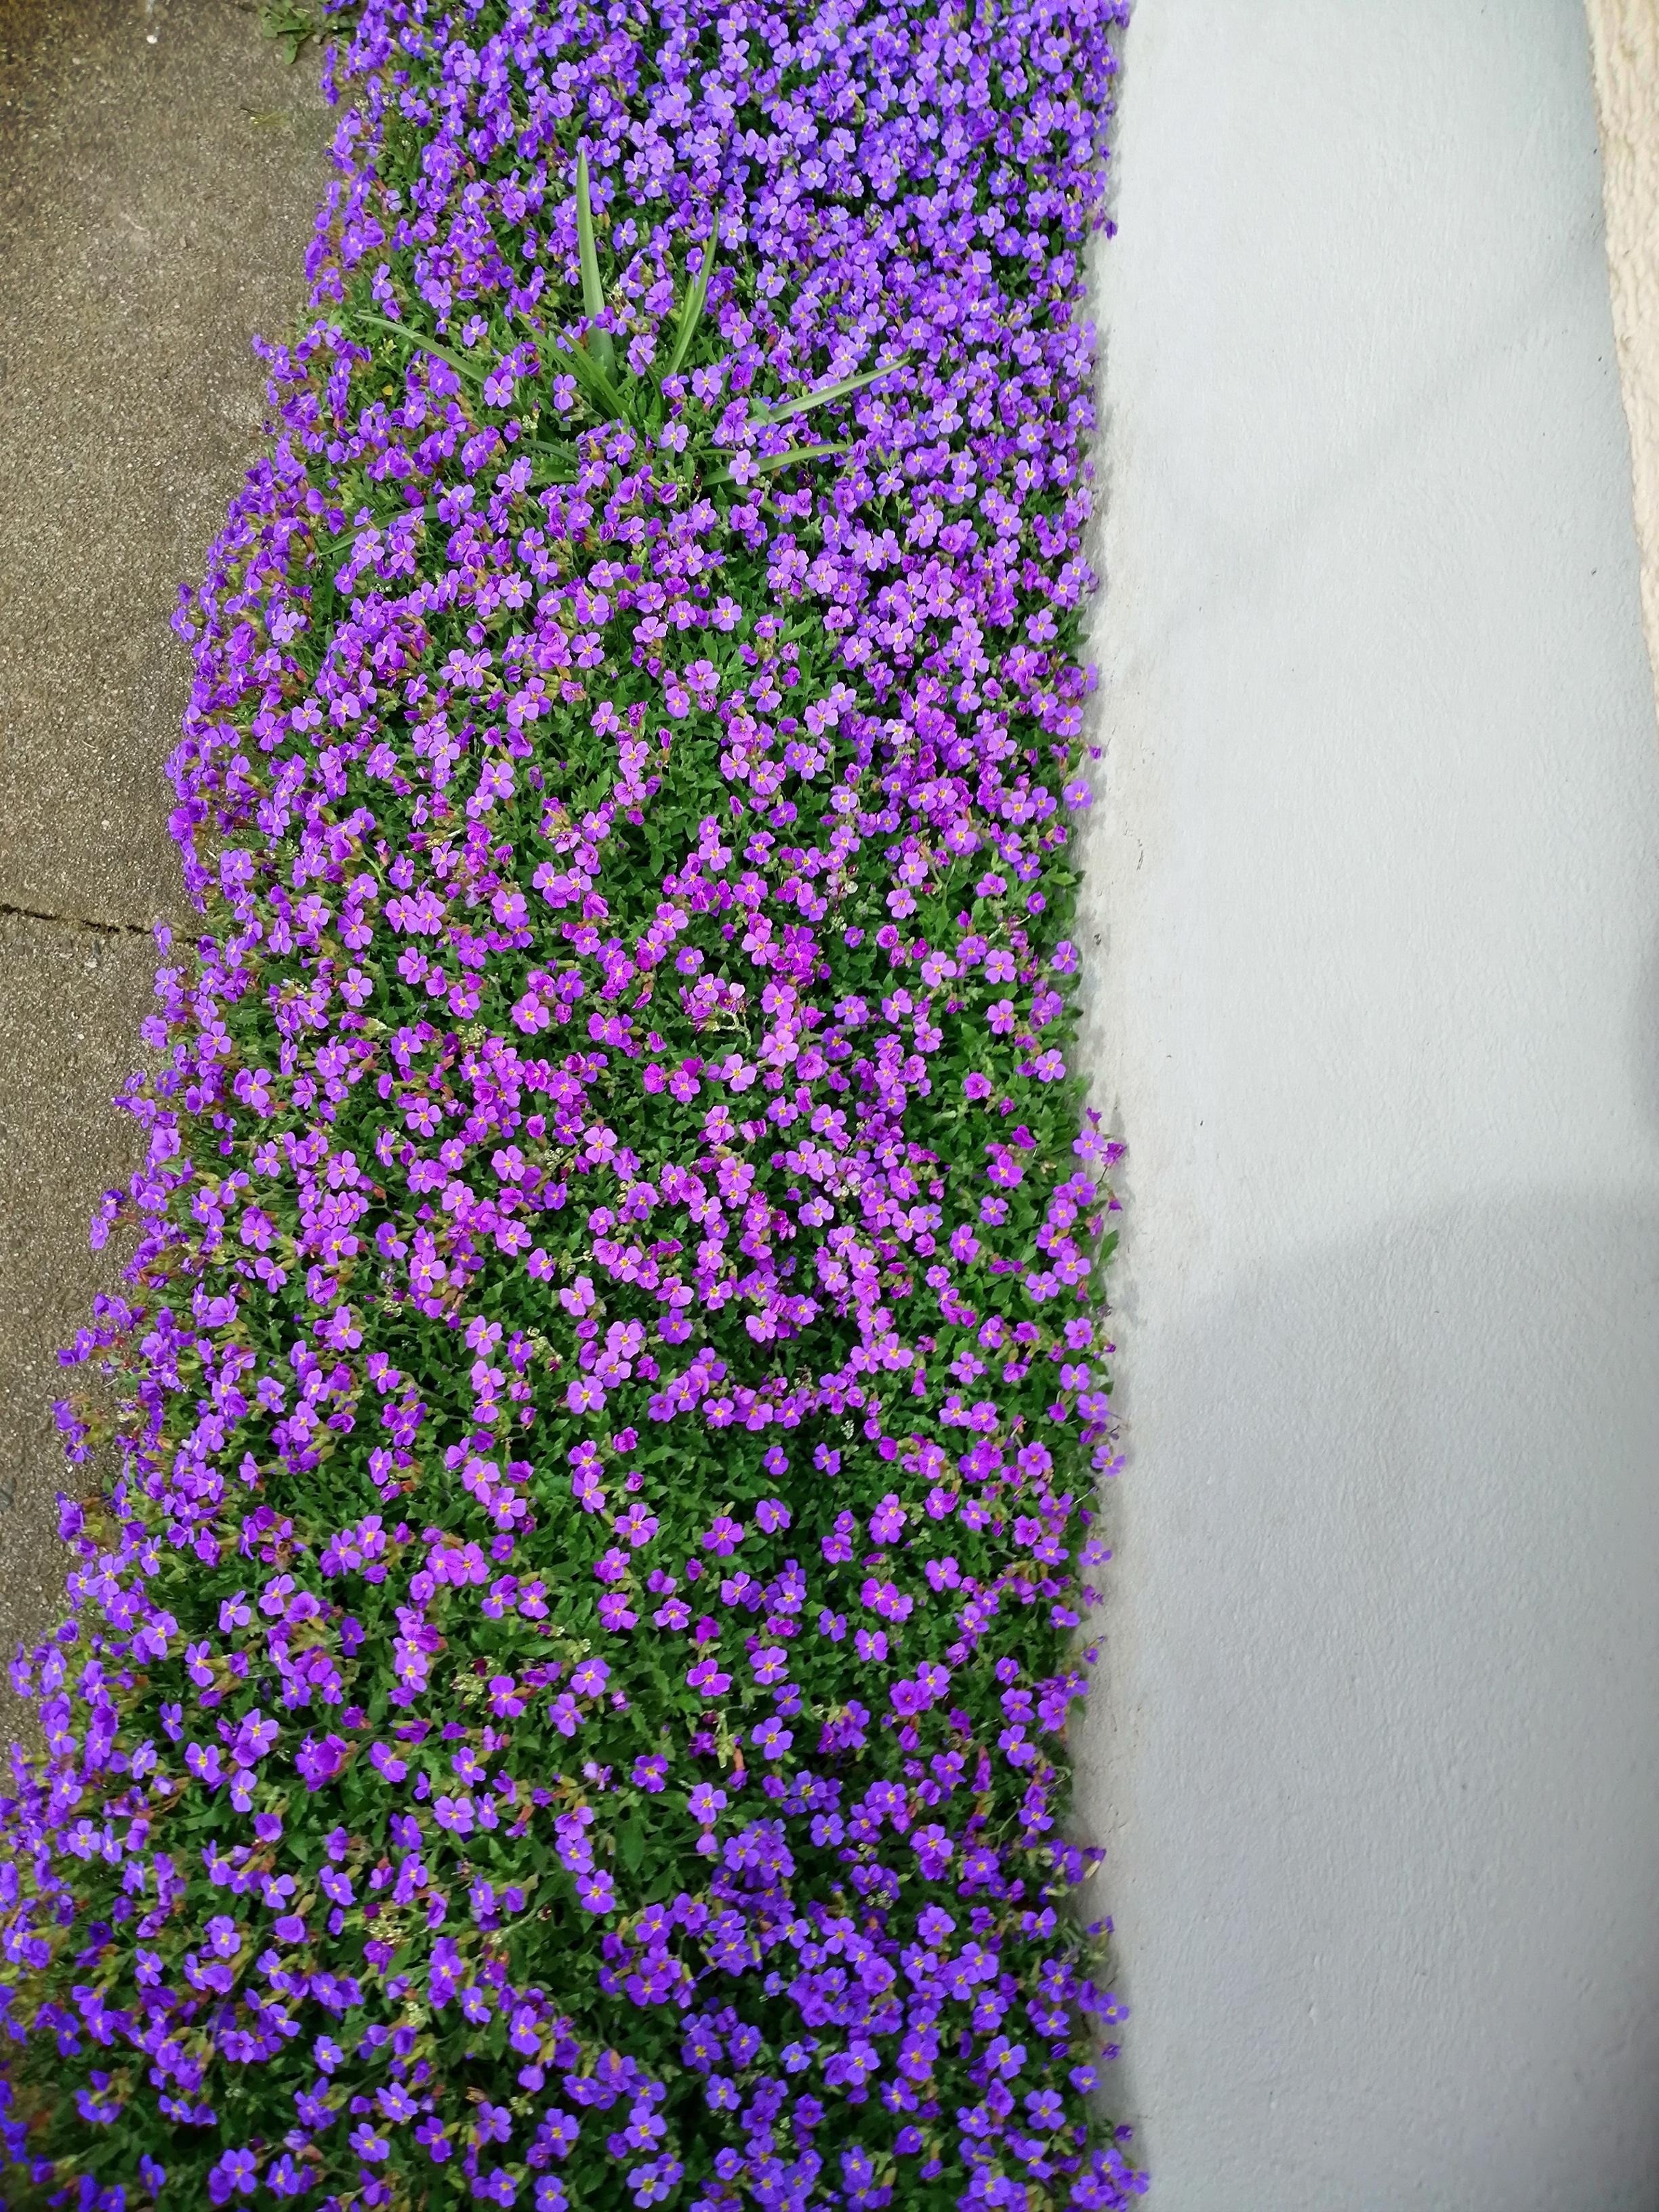 Unser Garten erwacht!
#blumen #blühen #garten